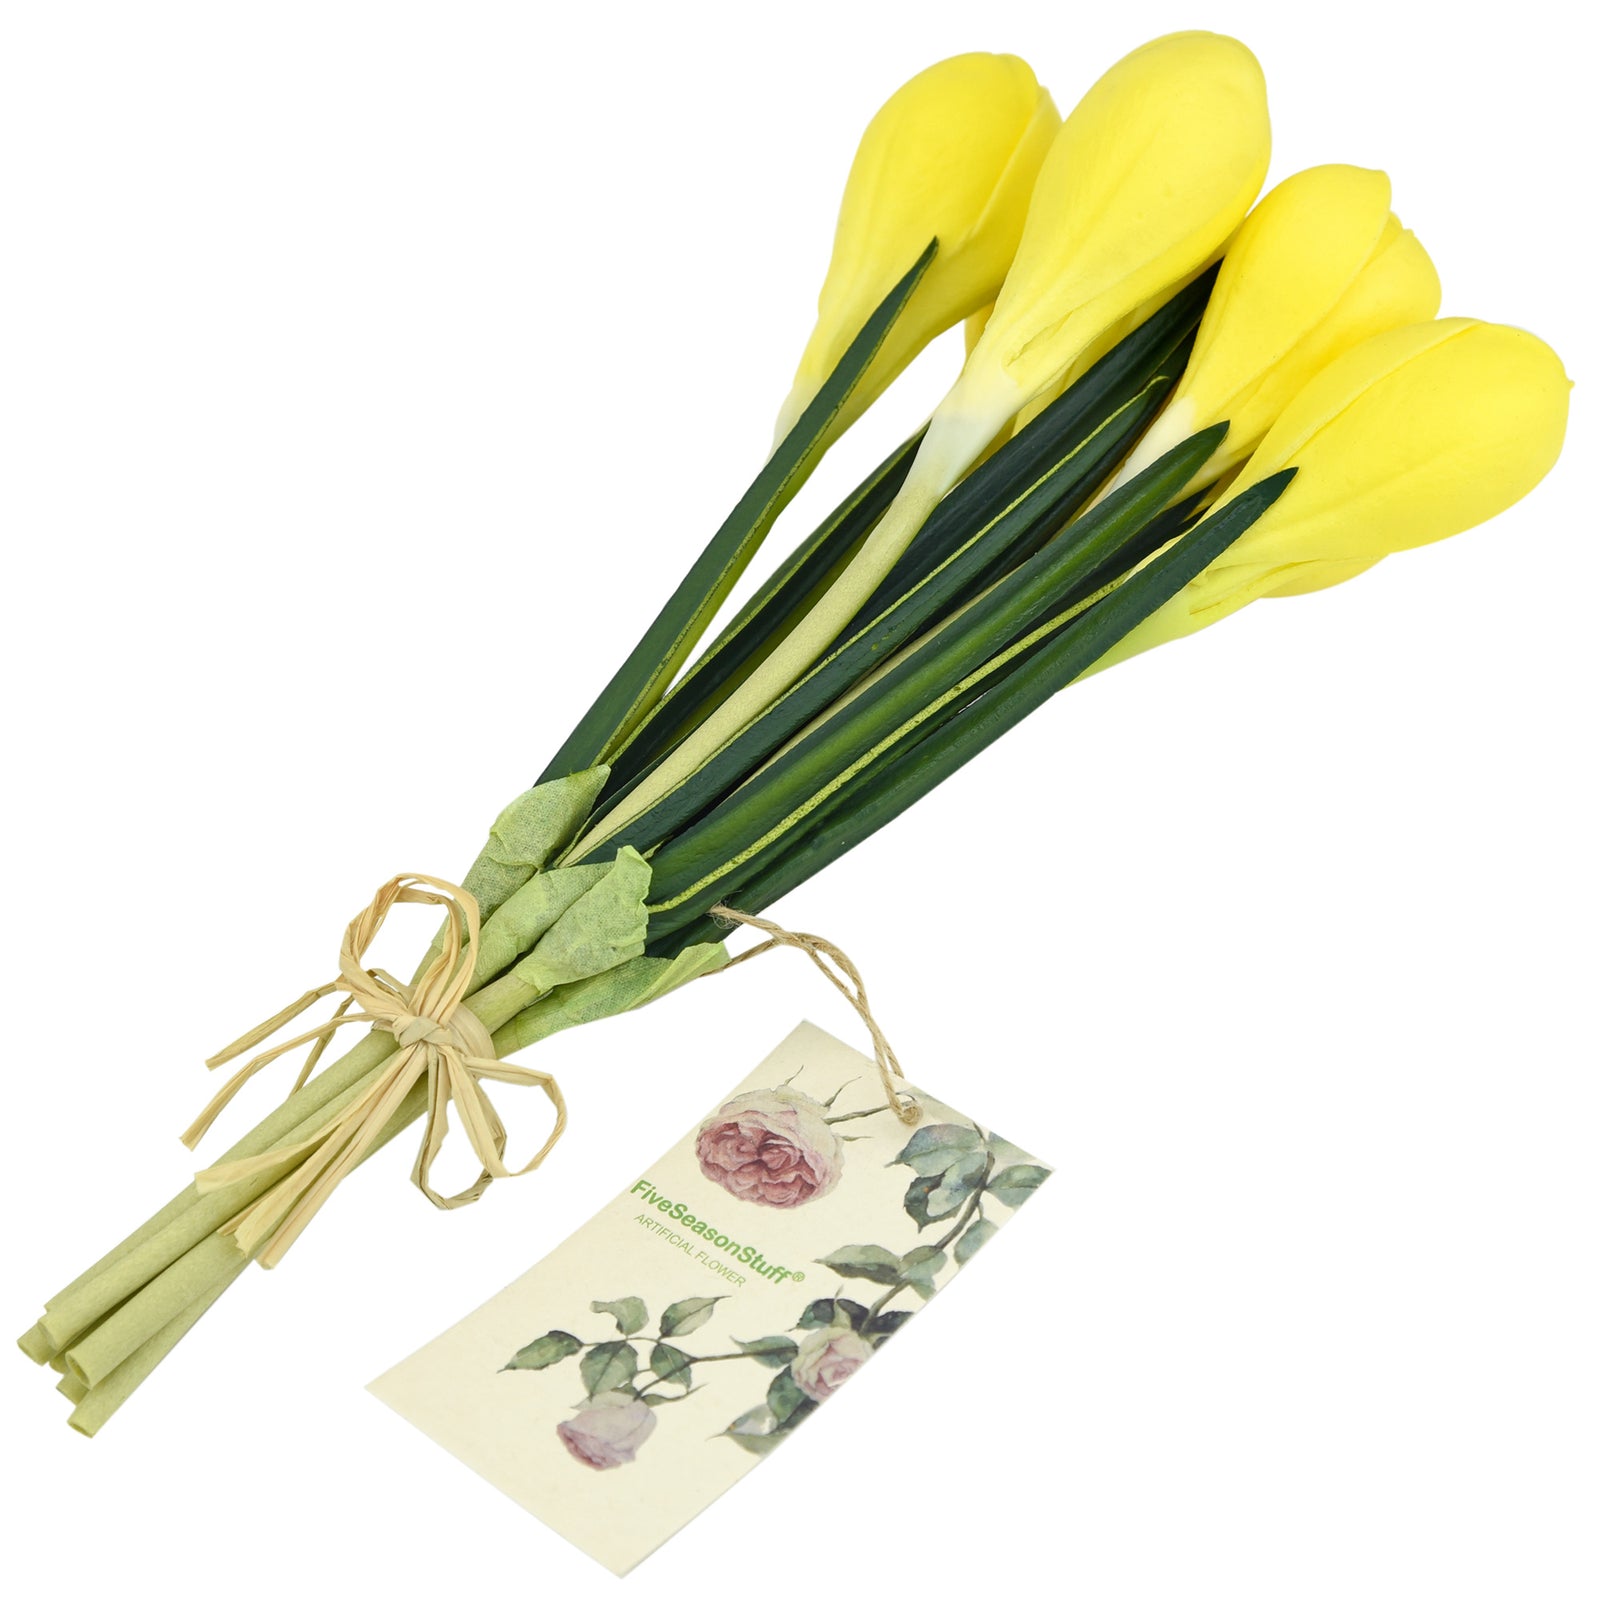 7 Stems (Yellow) Realistic Artificial Saffron Crocus Flowers